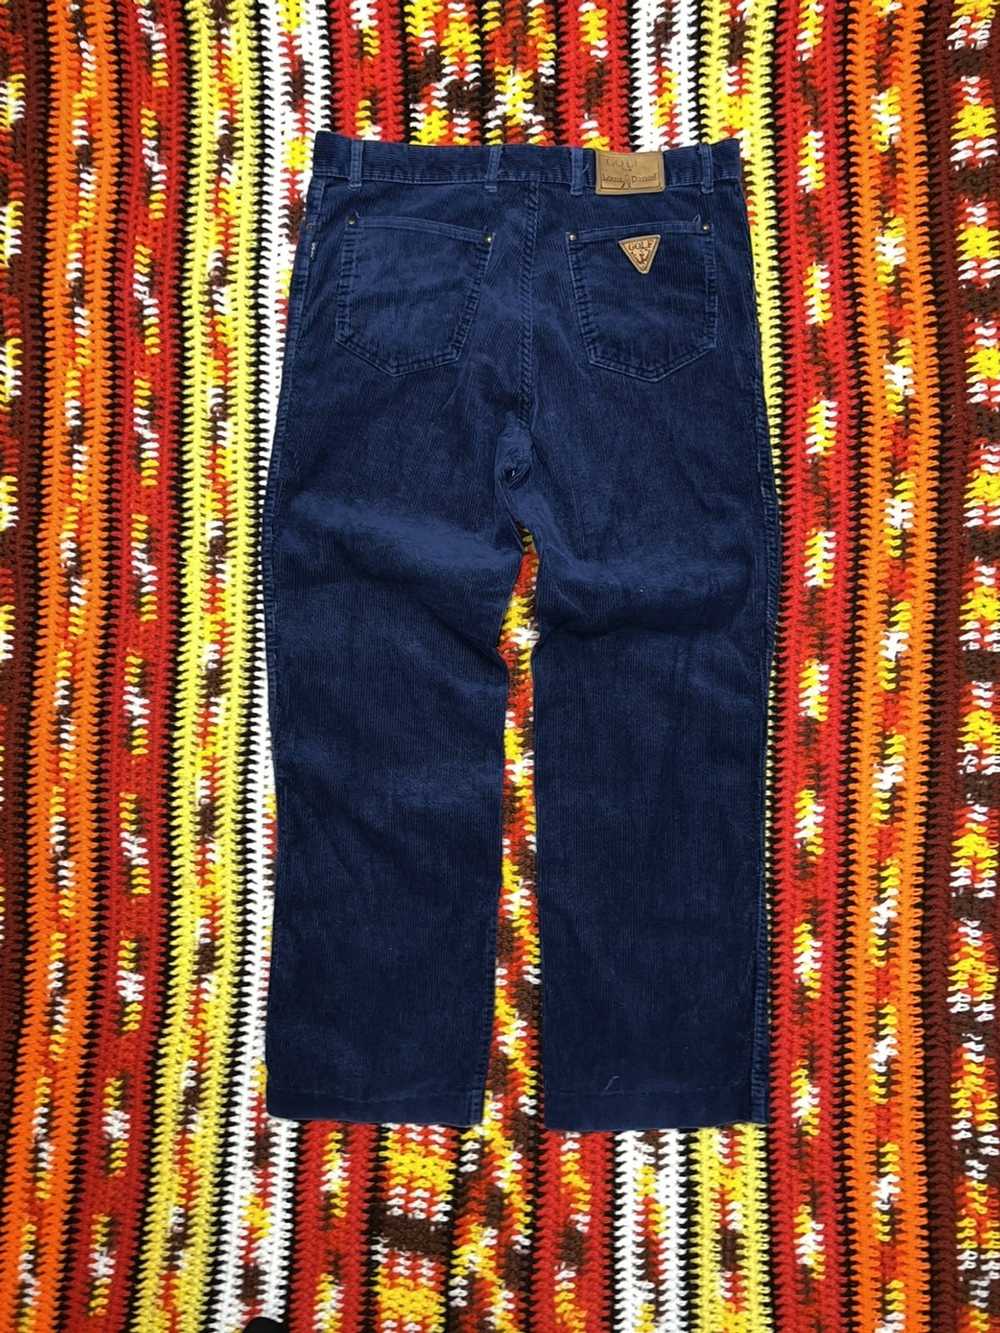 Vintage Vintage 90’s corduroy Pants Blue straight… - image 4